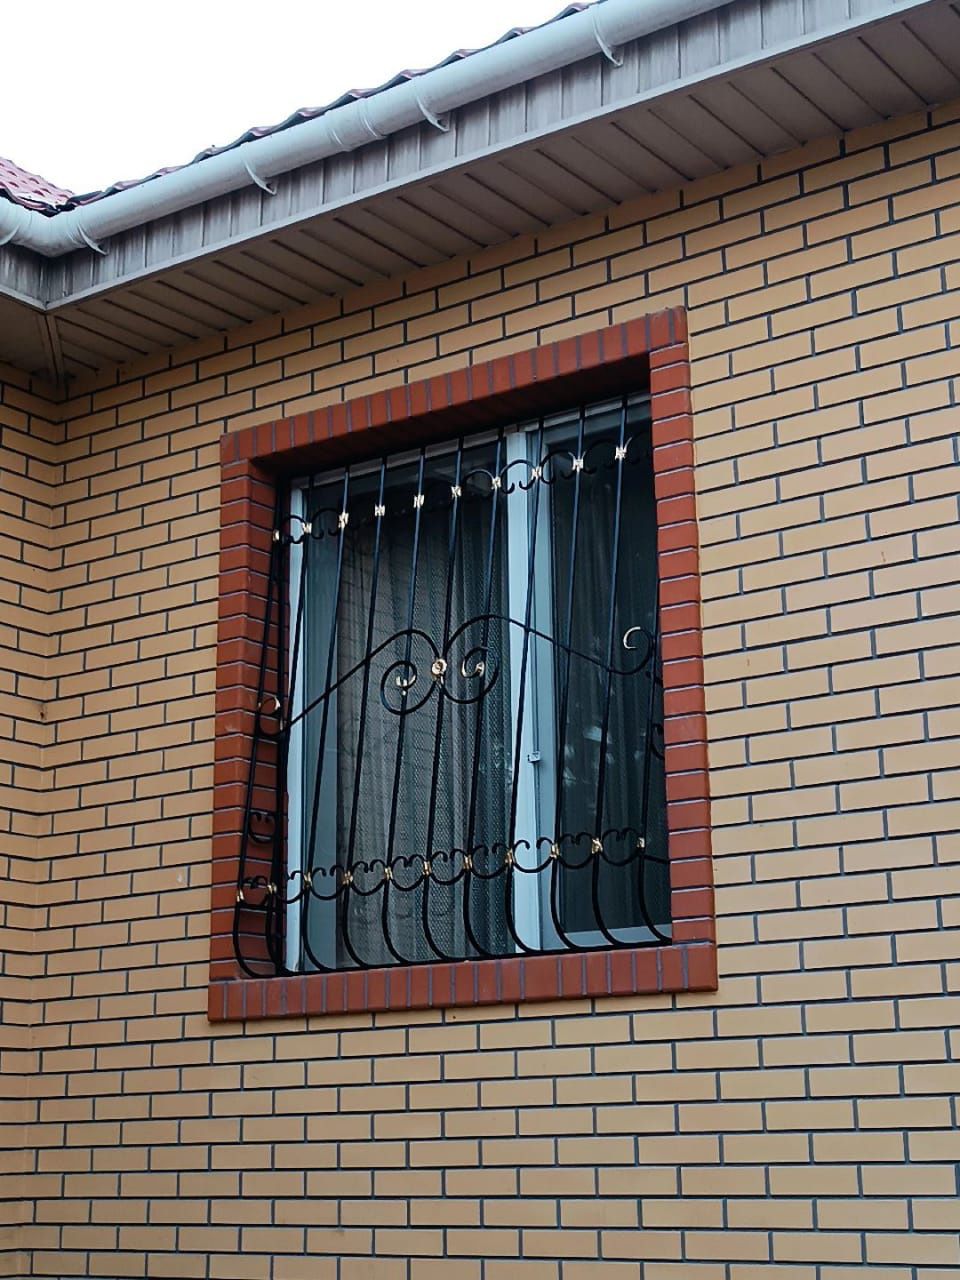 Решётки на окна металлические